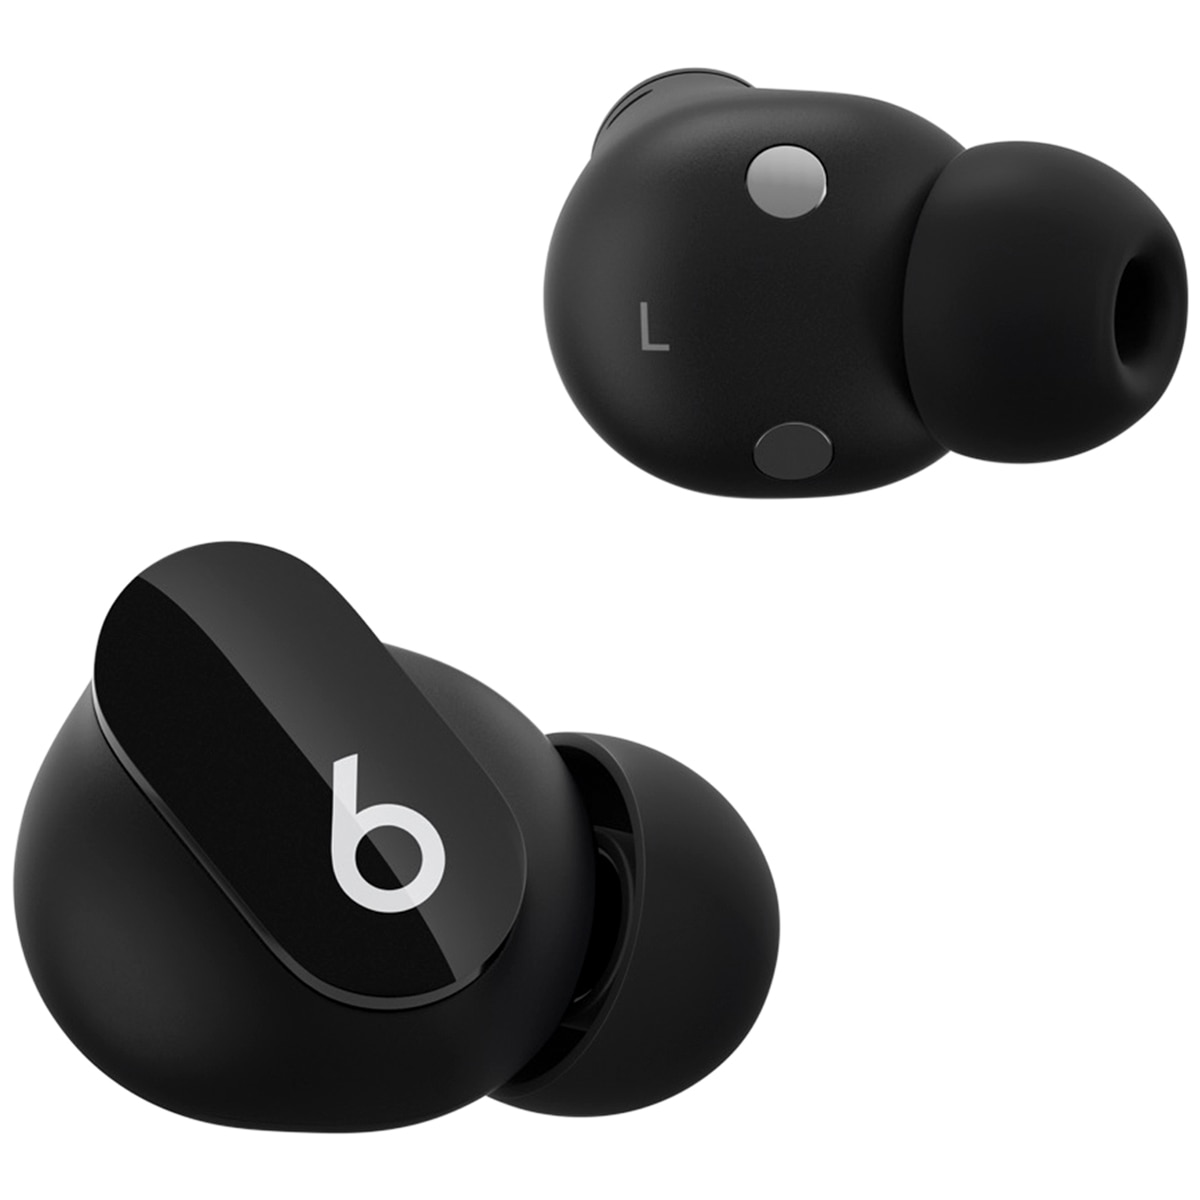 Beats Studio Buds True Wireless Noise Cancelling Earphones Black